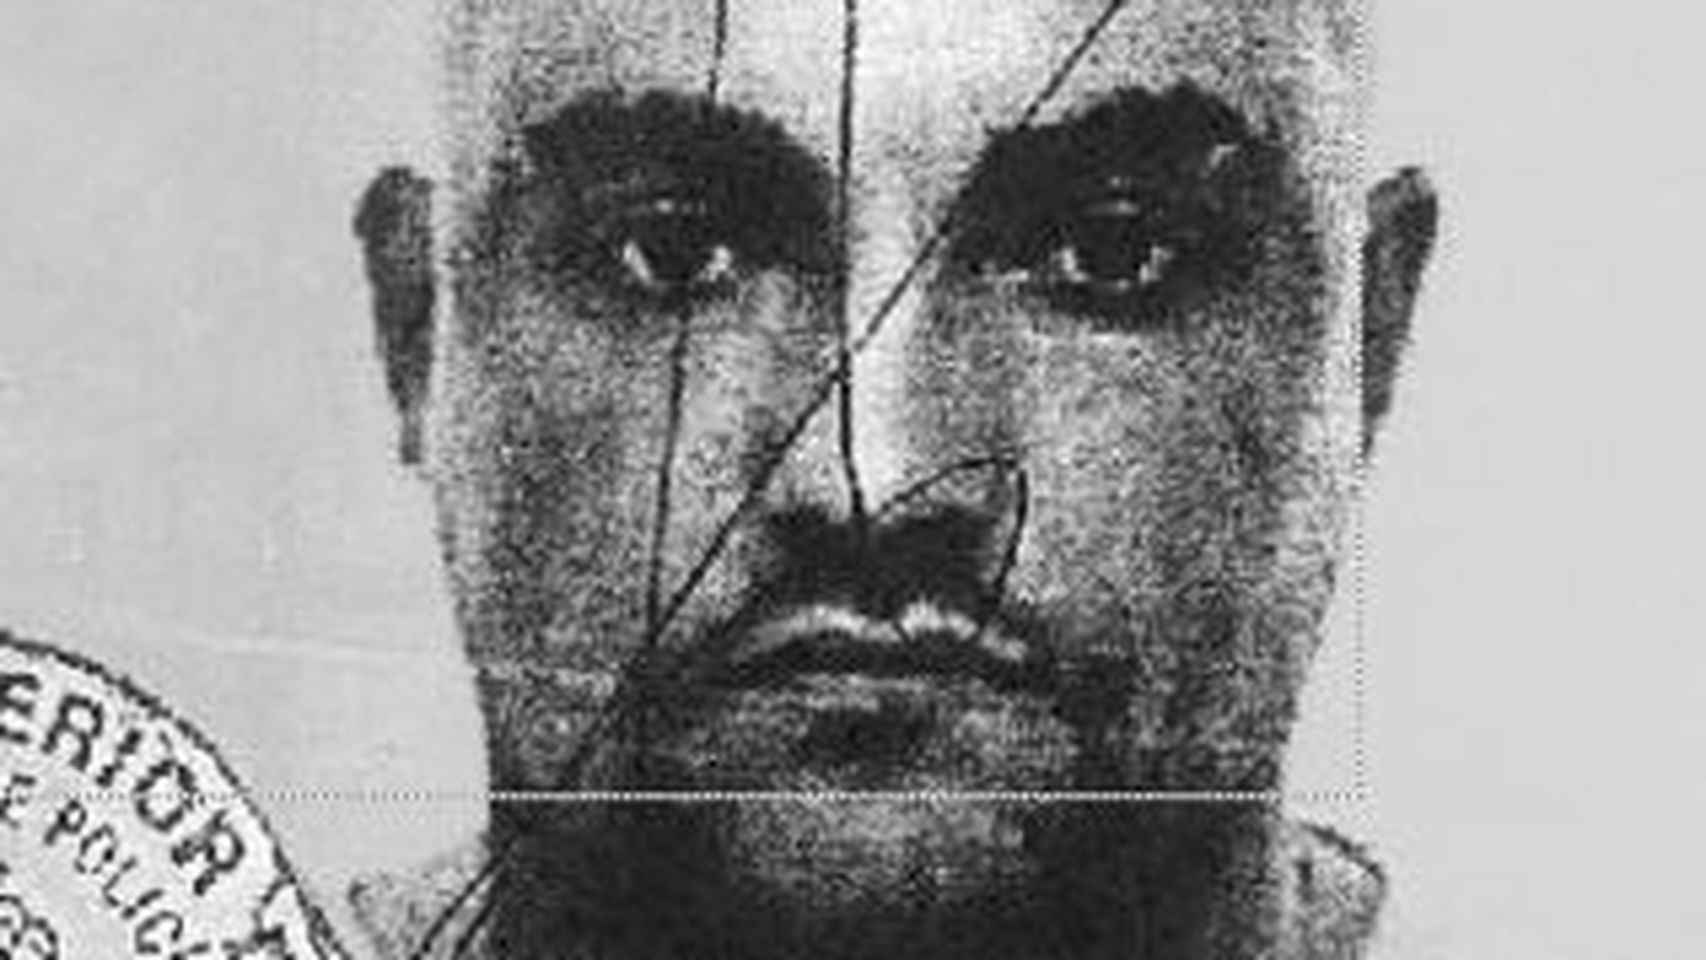 Foto de la ficha policial de Óscar del Pino, vinculado a Hammerskin y detenido por asesinato